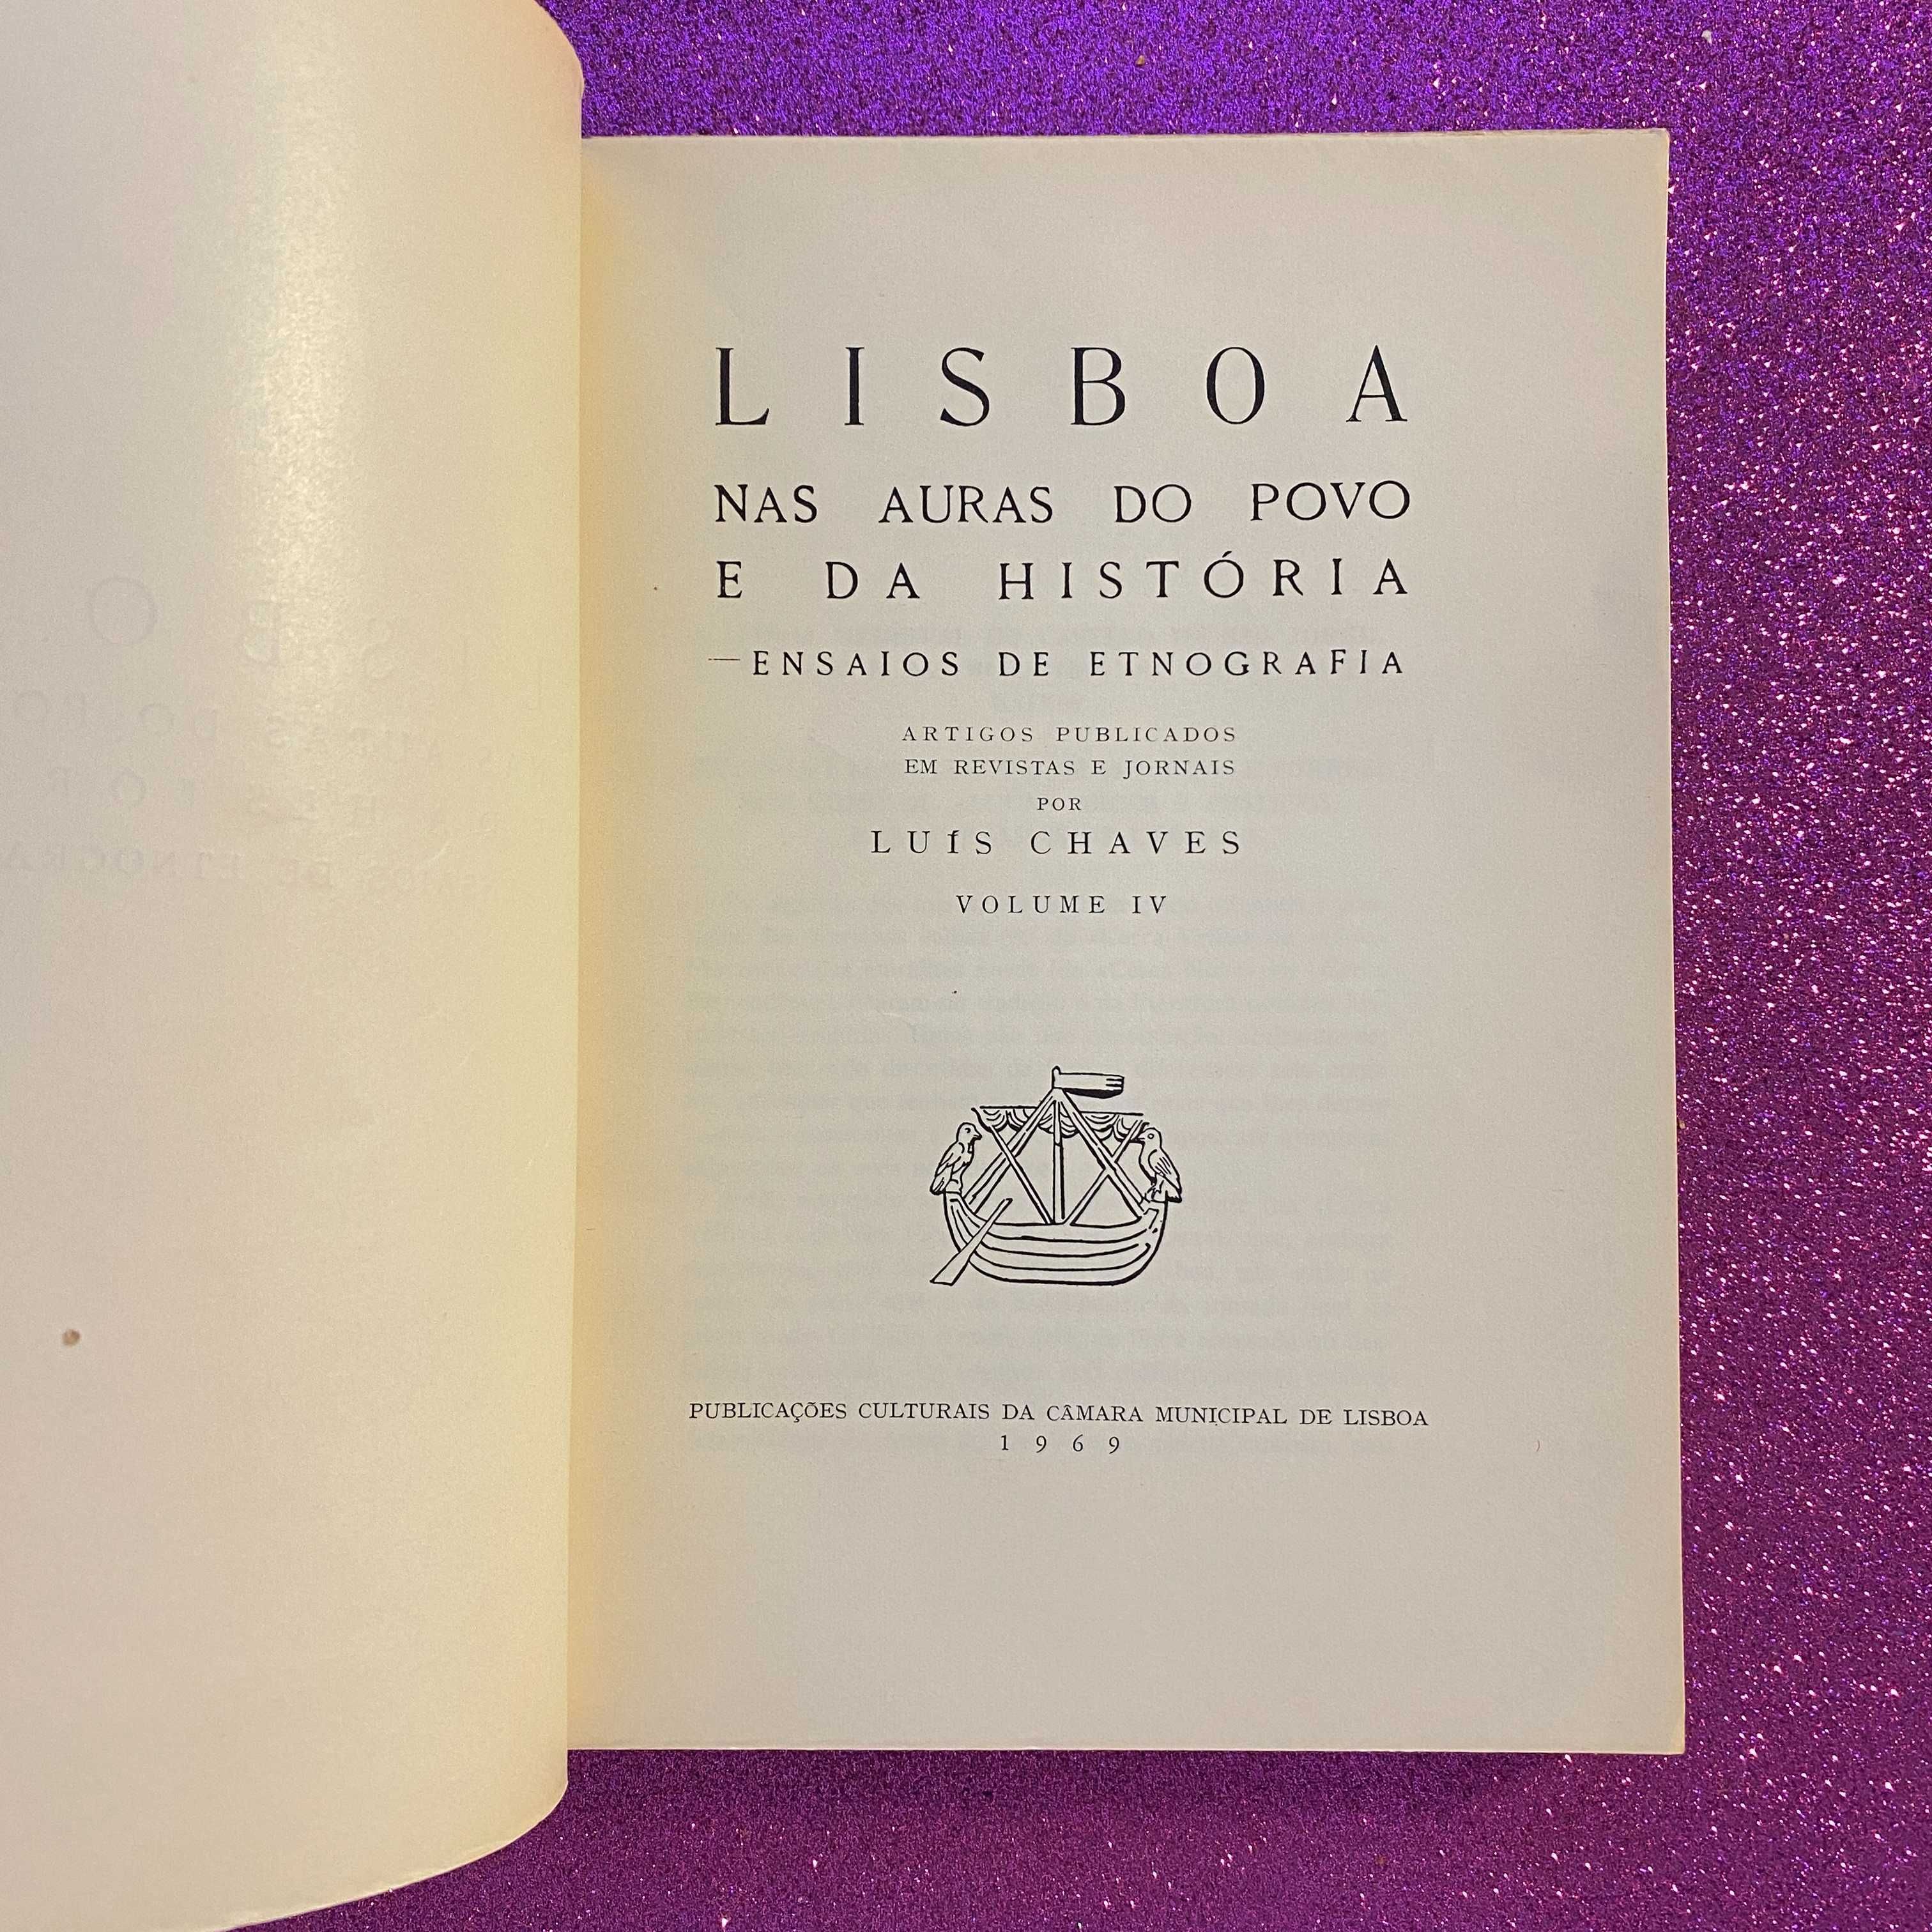 Lisboa nas auras do povo e da história - ensaios de etnografia